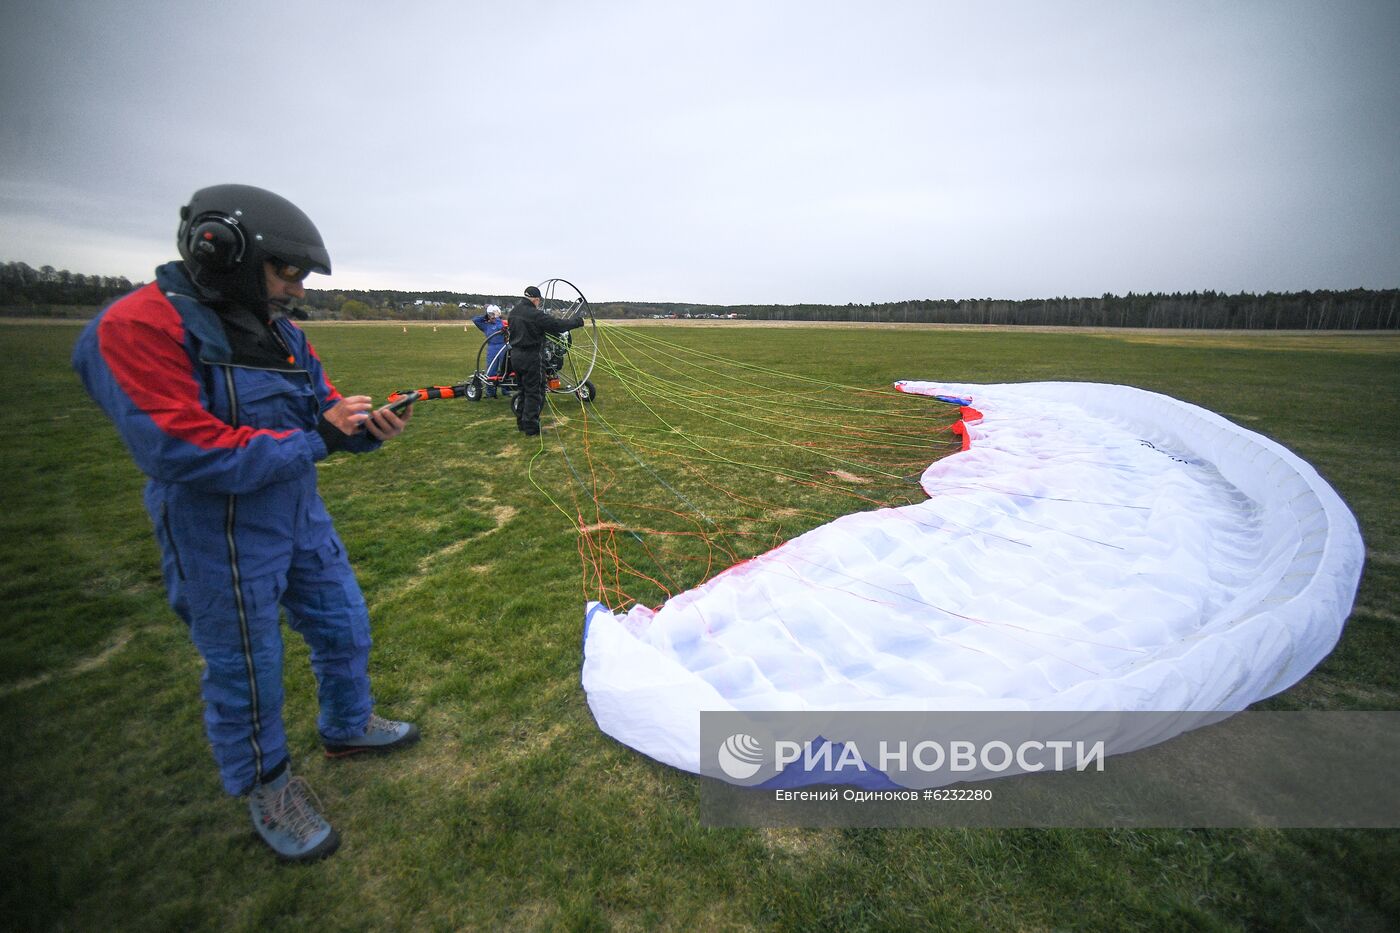 Тренировочные полеты пилотов сверхлегкой авиации в Московской области